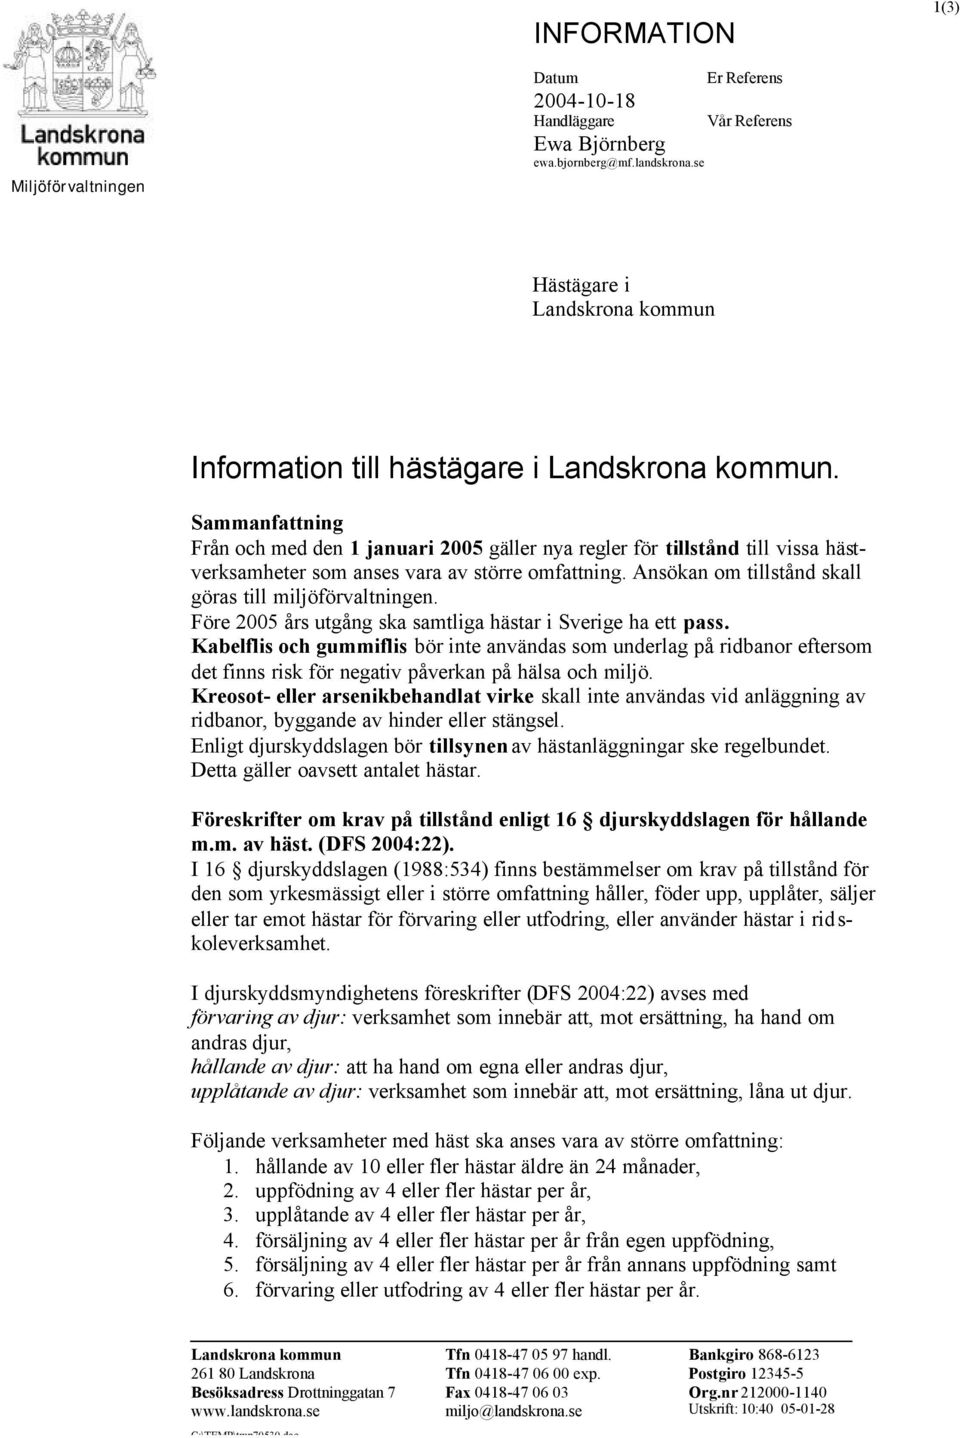 Ansökan om tillstånd skall göras till miljöförvaltningen. Före 2005 års utgång ska samtliga hästar i Sverige ha ett pass.